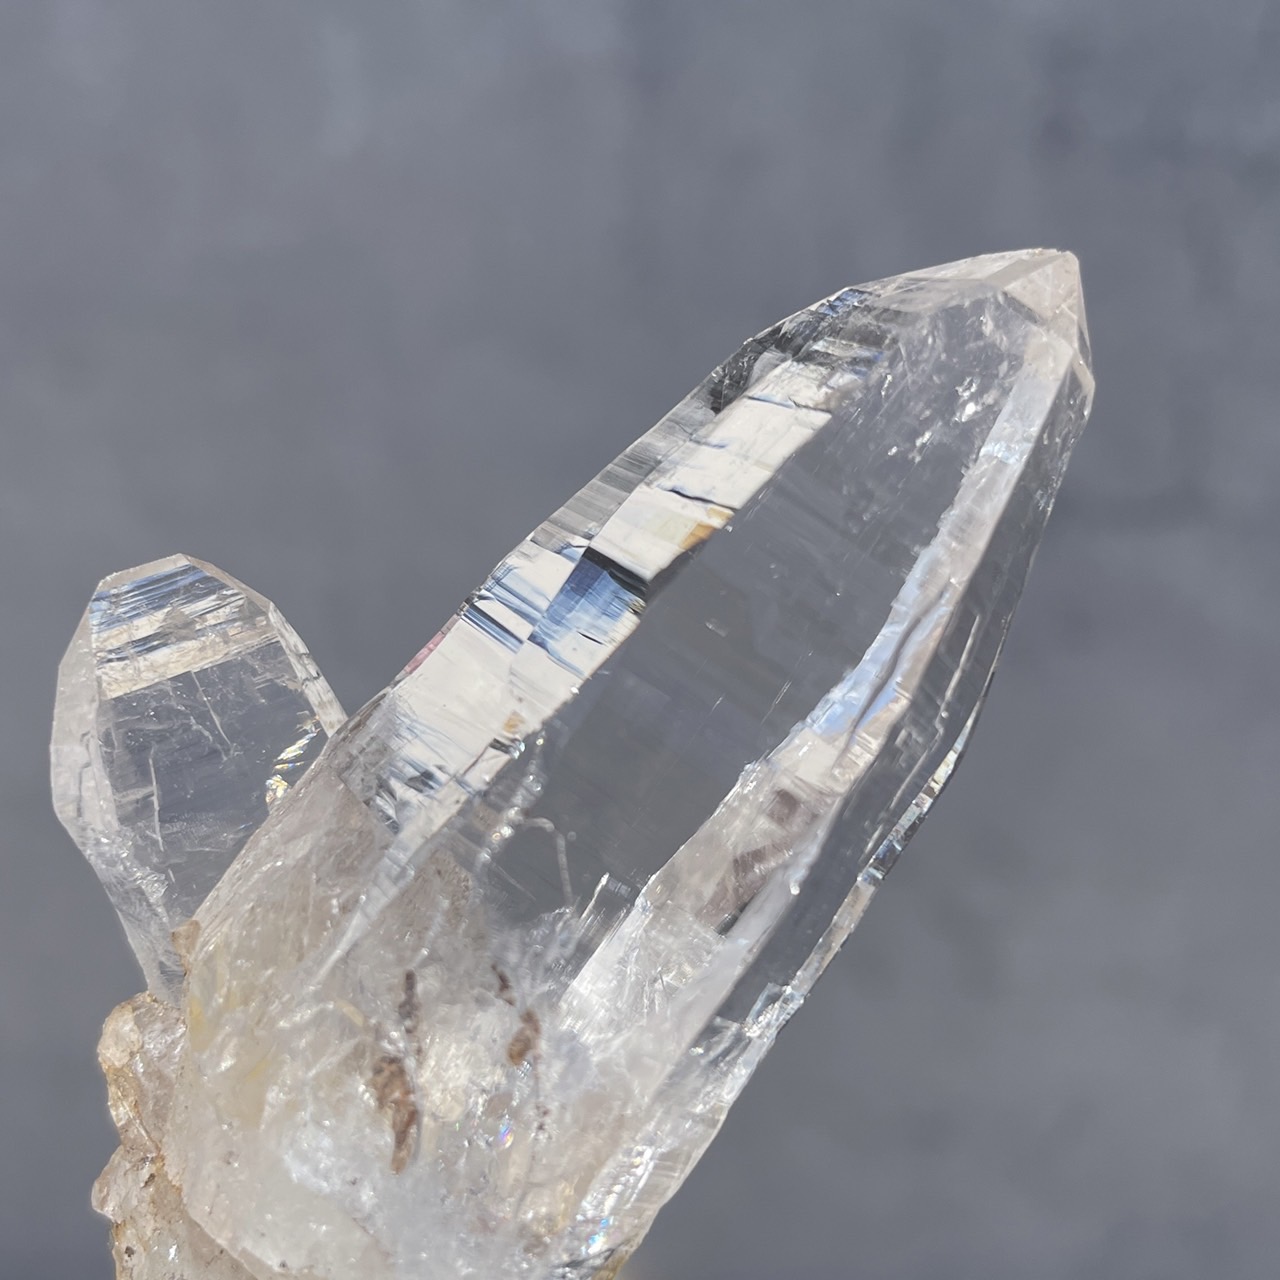 「最強」の水晶として名高い、ガネーシュヒマール水晶を入荷しました。